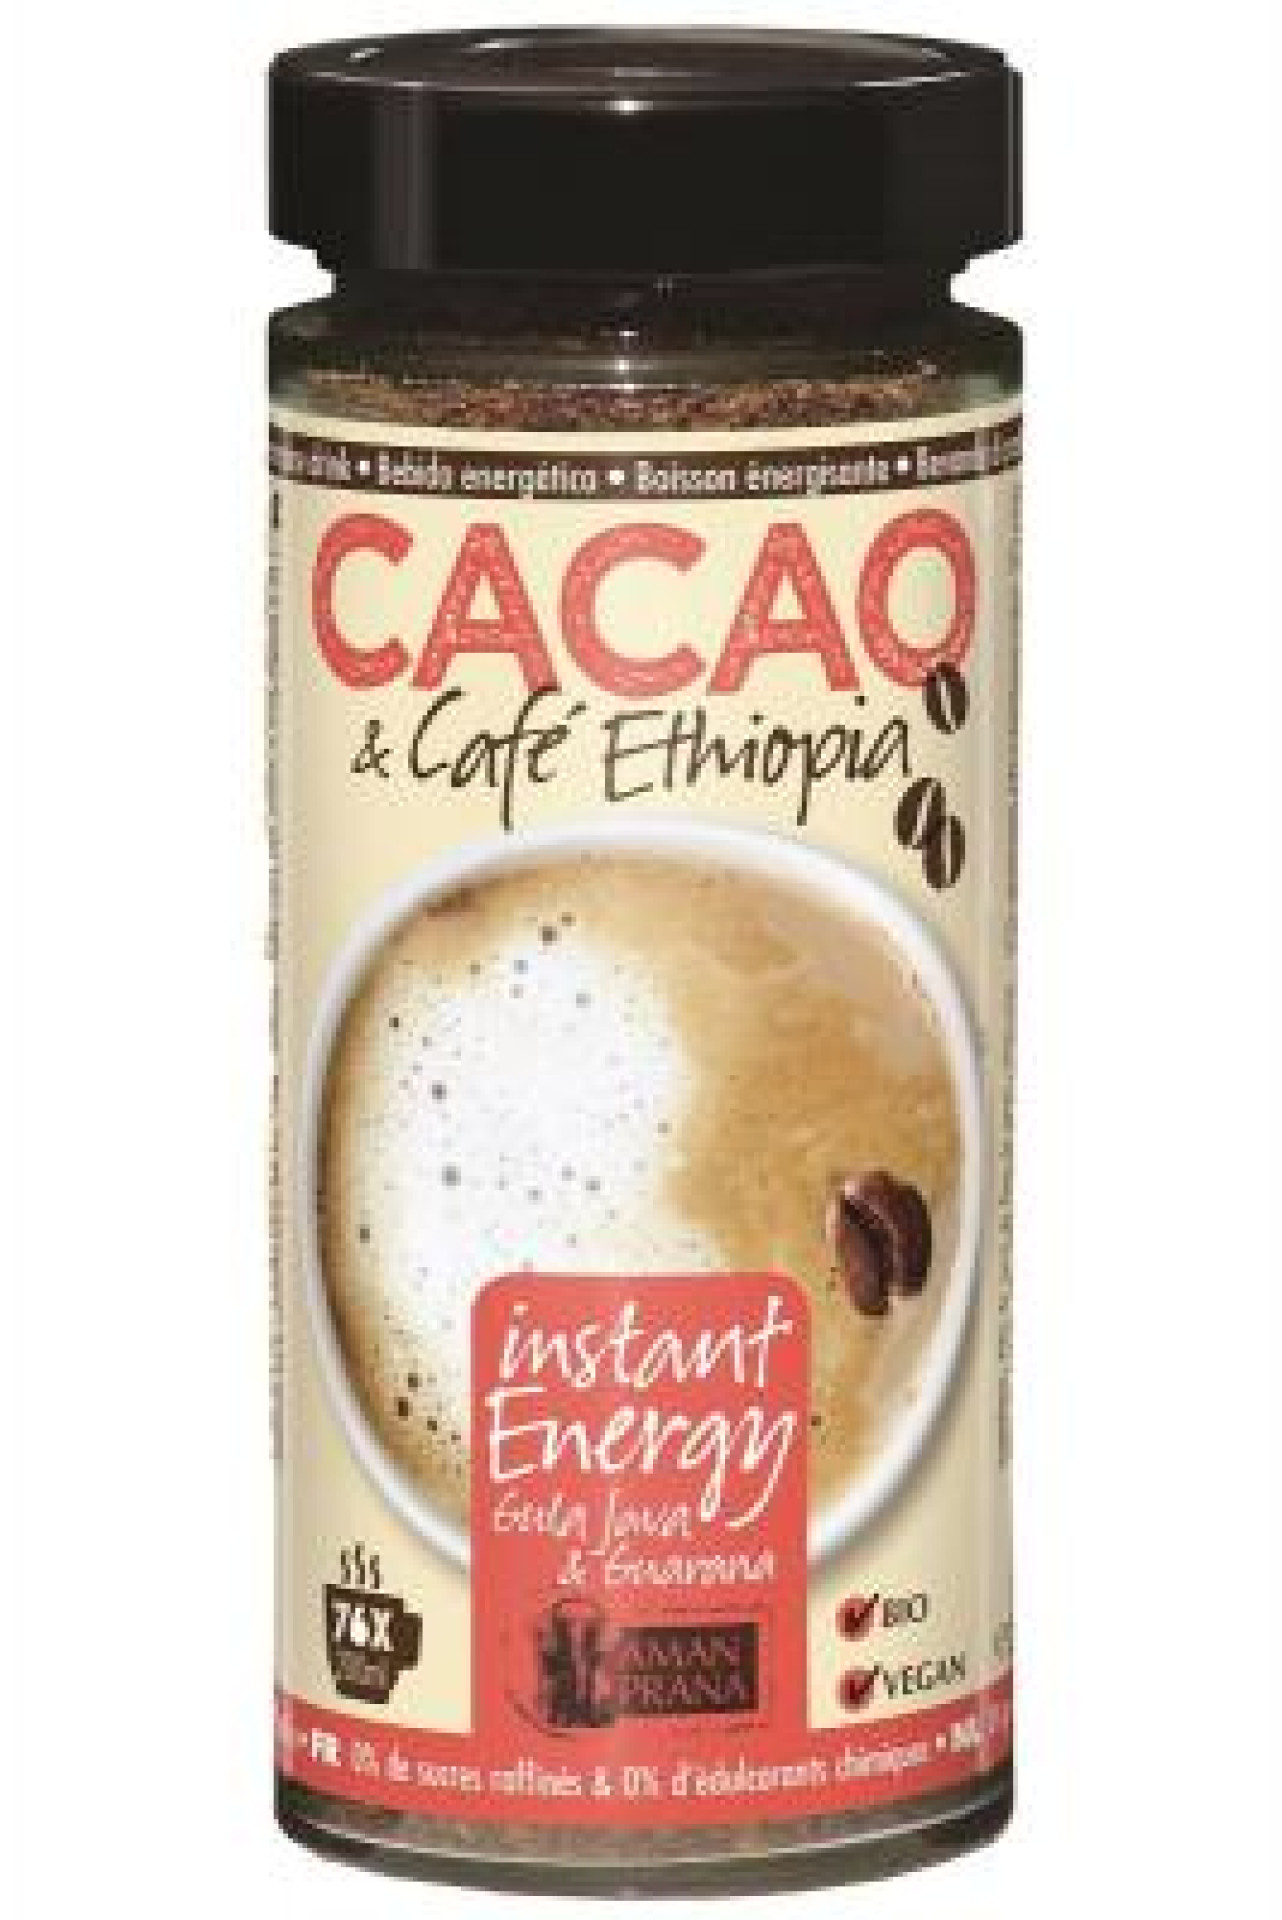 Gula Java Cacao & Café Ethiopia